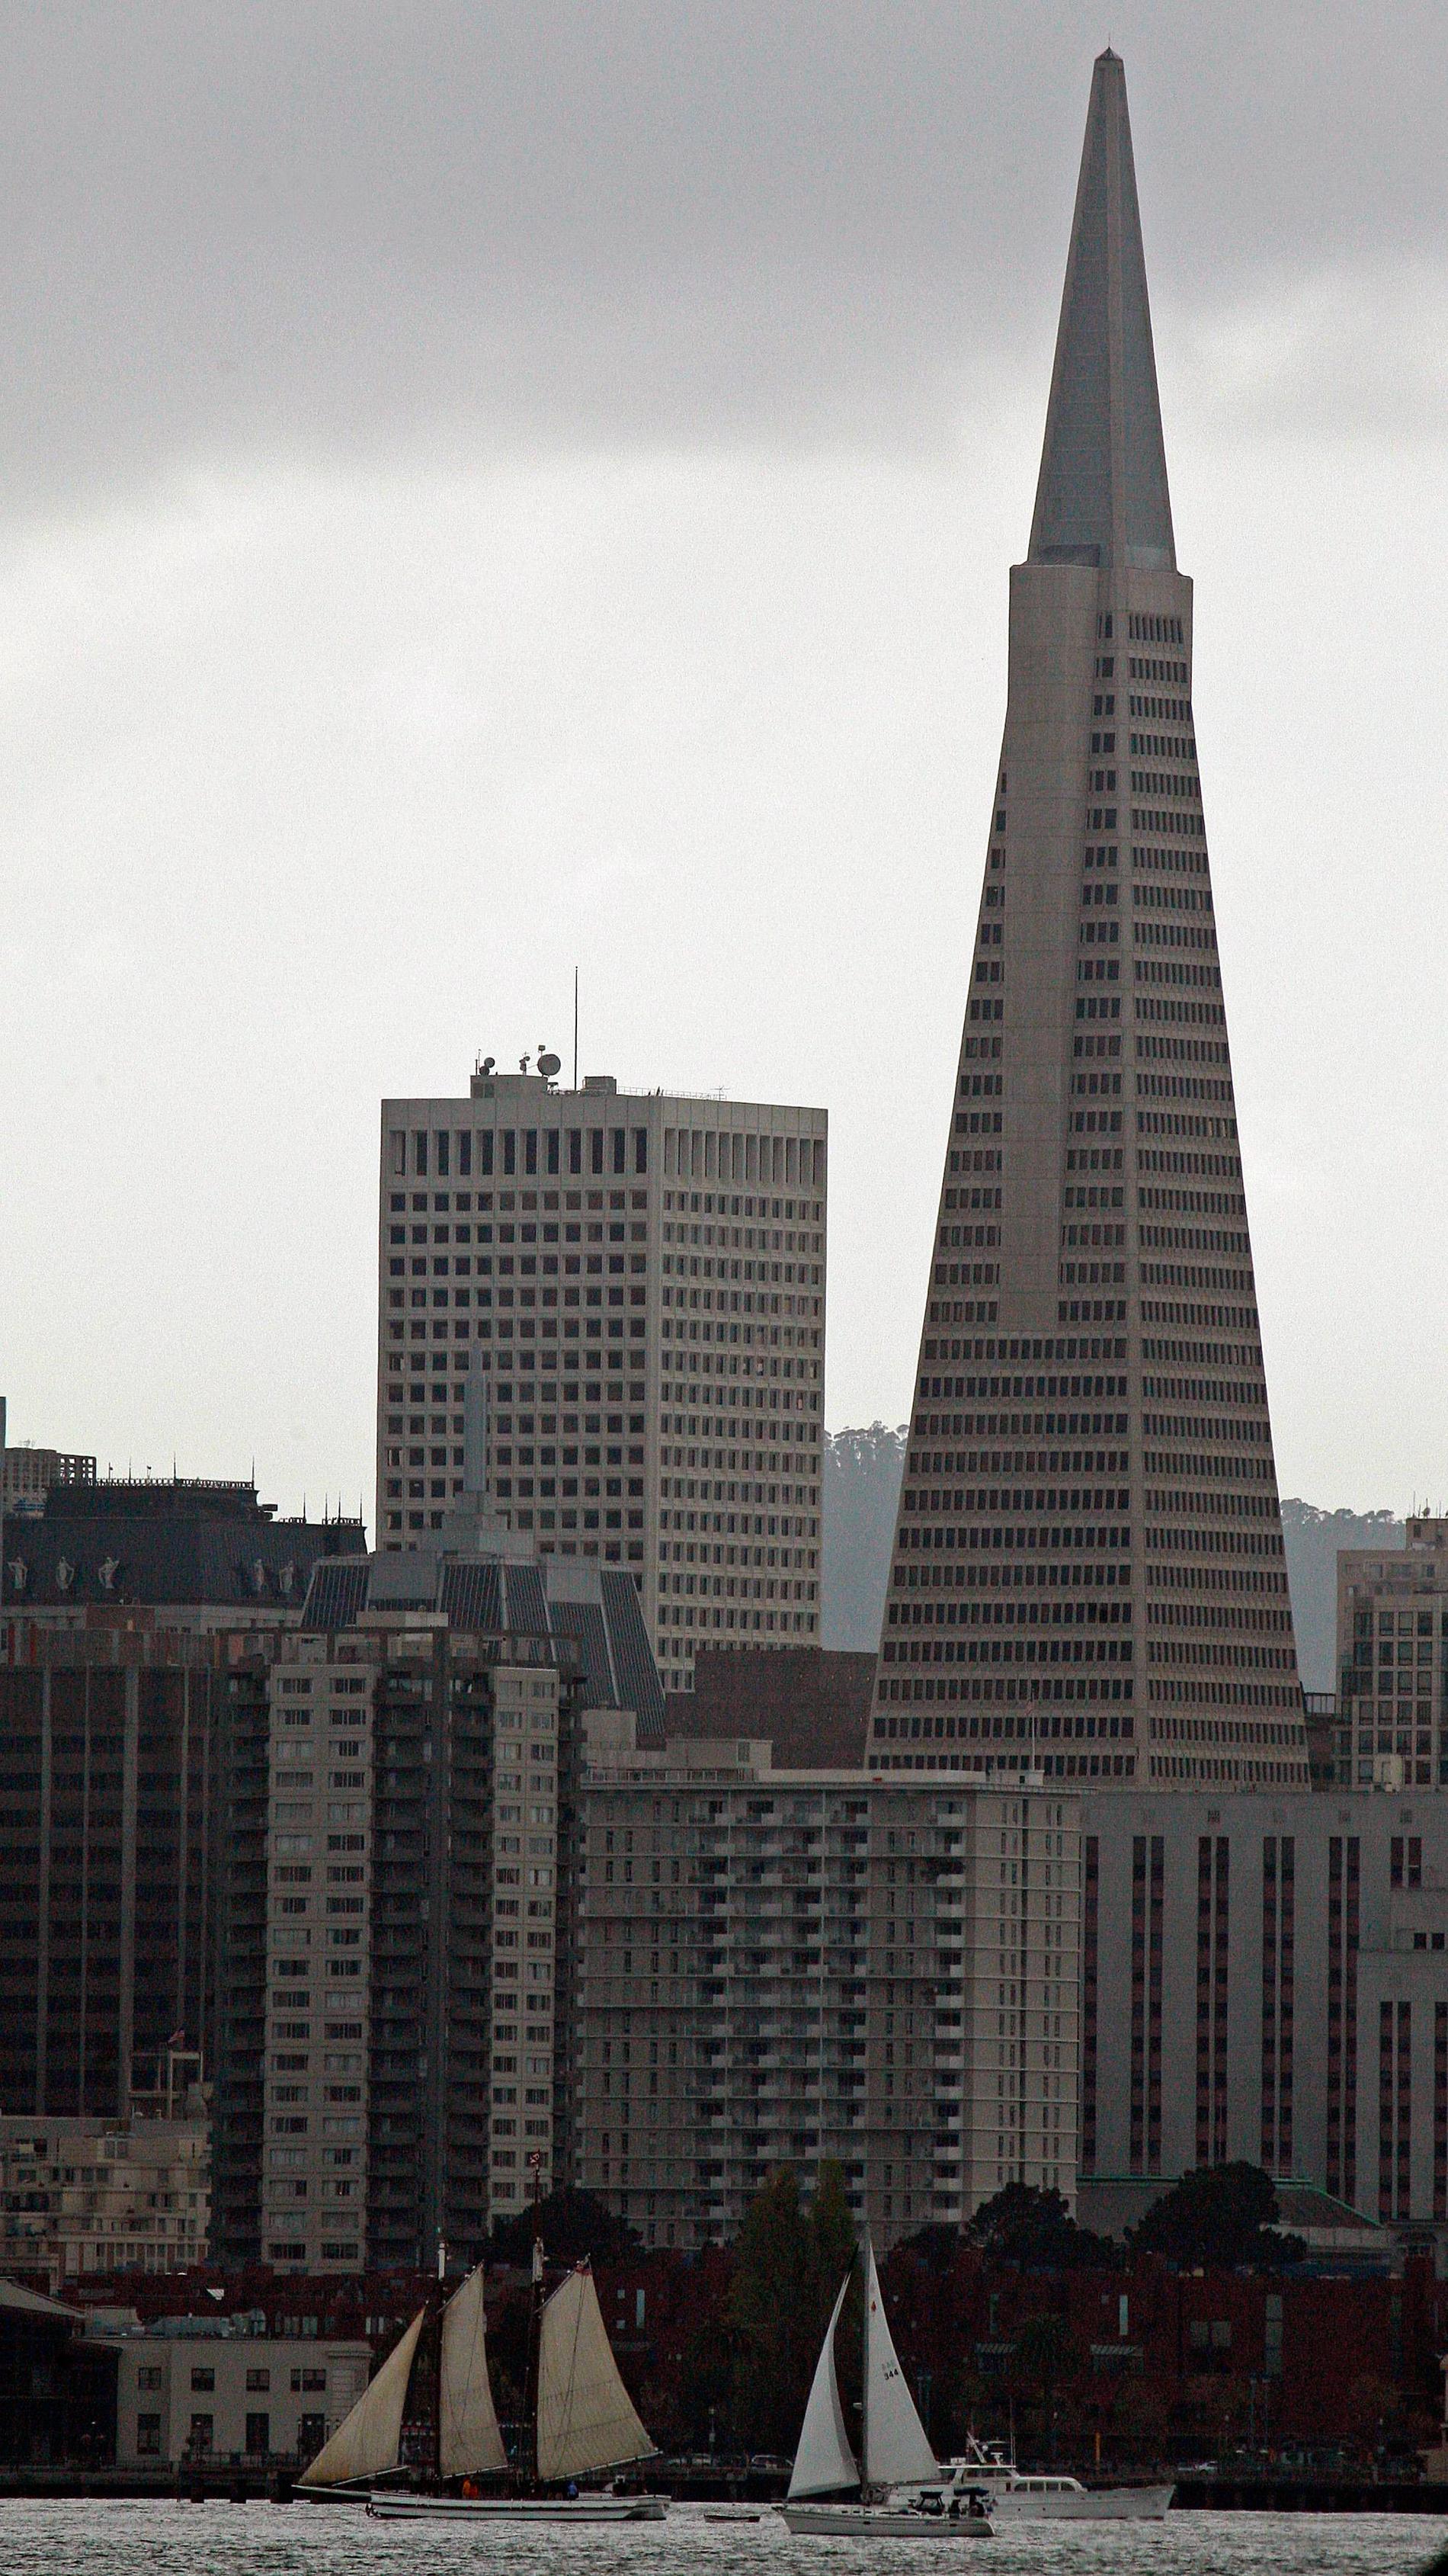 6. TRANSAMERICA PYRAMID, SAN FRANCISCO Som en raket sticker Transamerica Pyramid upp ur San Franciscos annars blygsamma skyline. Den spetsiga formen ska göra att byggnaden klarar jordbävningar. Höjd: 260 meter. Klar: 1972. Byggkostnad: 224 miljoner kronor. Här kan du kolla vad det kostar att flyga till San Francisco.